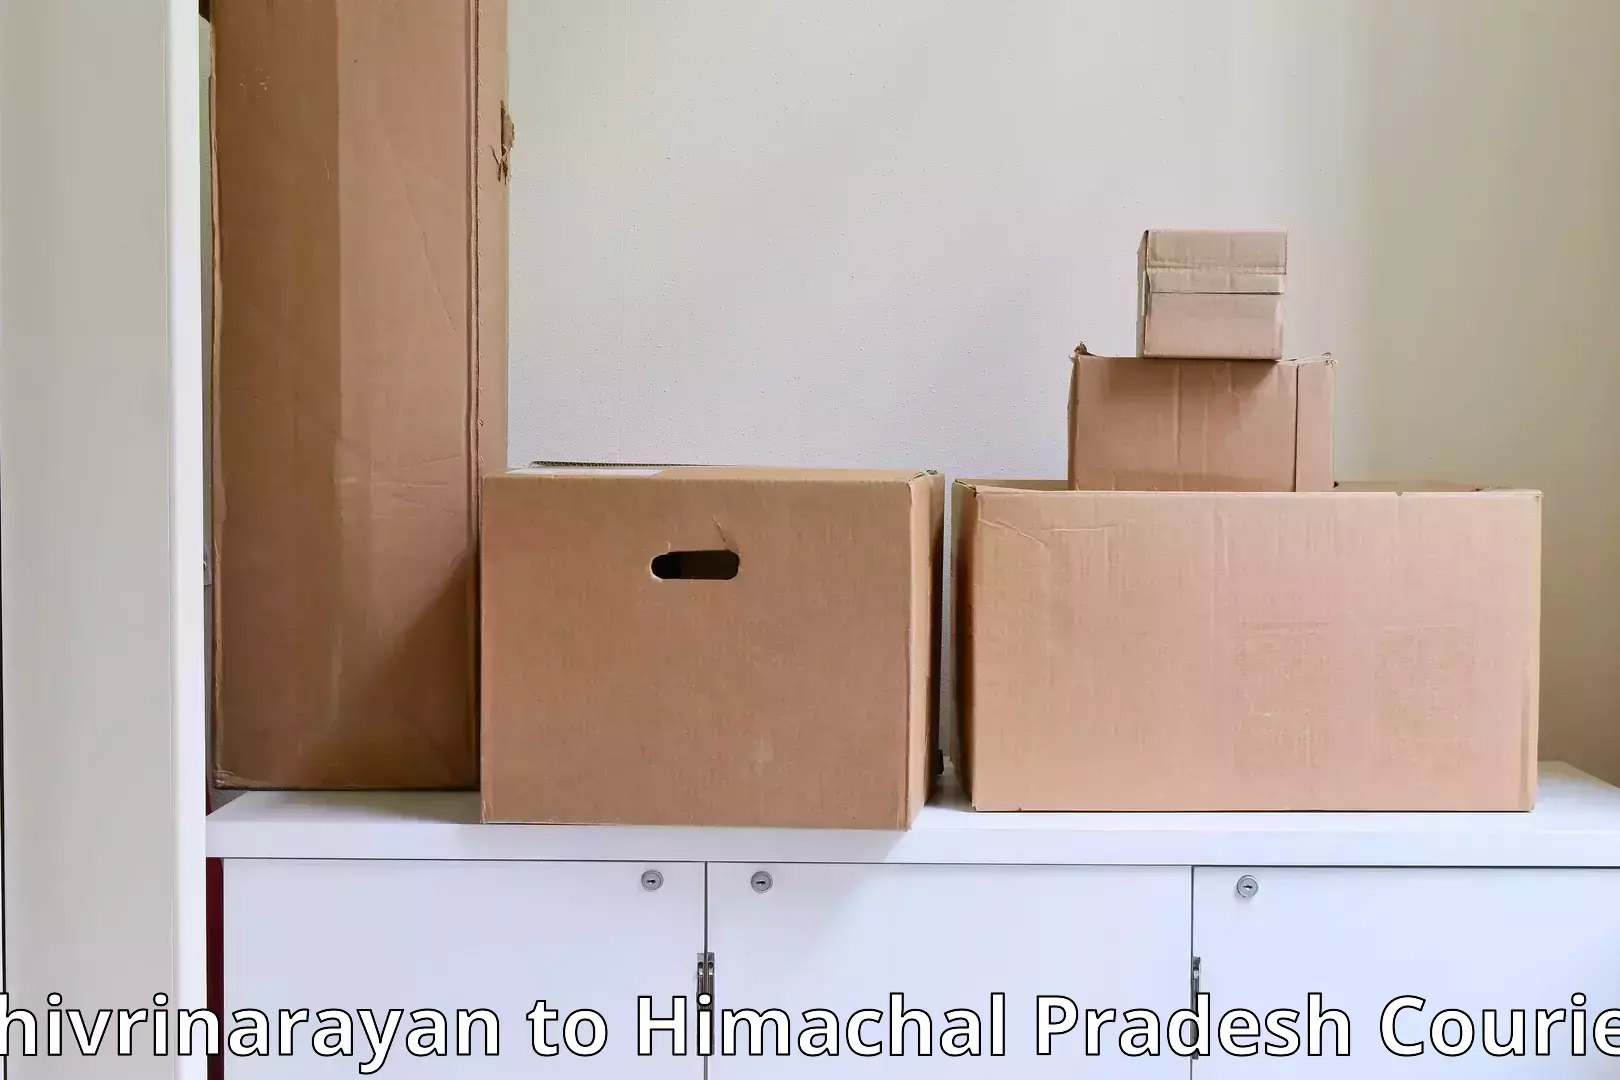 Professional household moving Shivrinarayan to Banjar